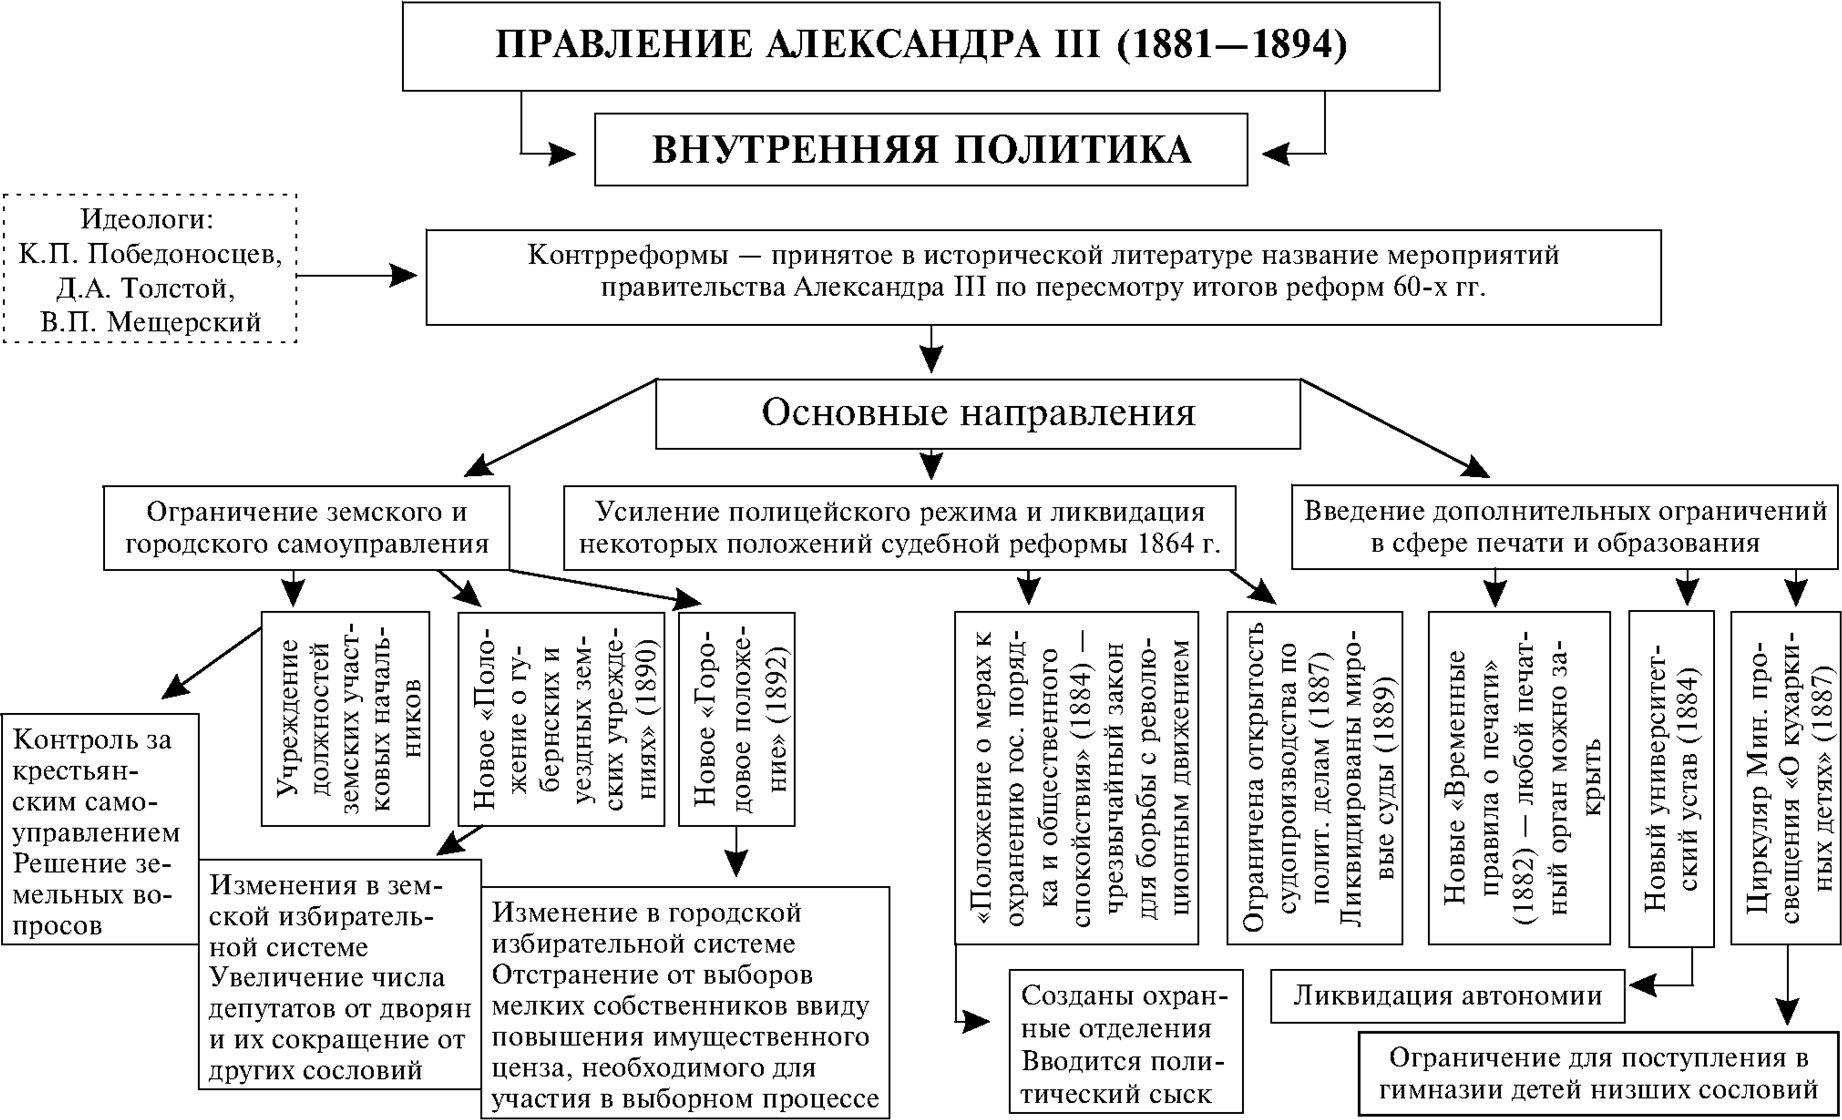 Укрепление власти при александре 3. Россия во второй половине 19 века таблица.